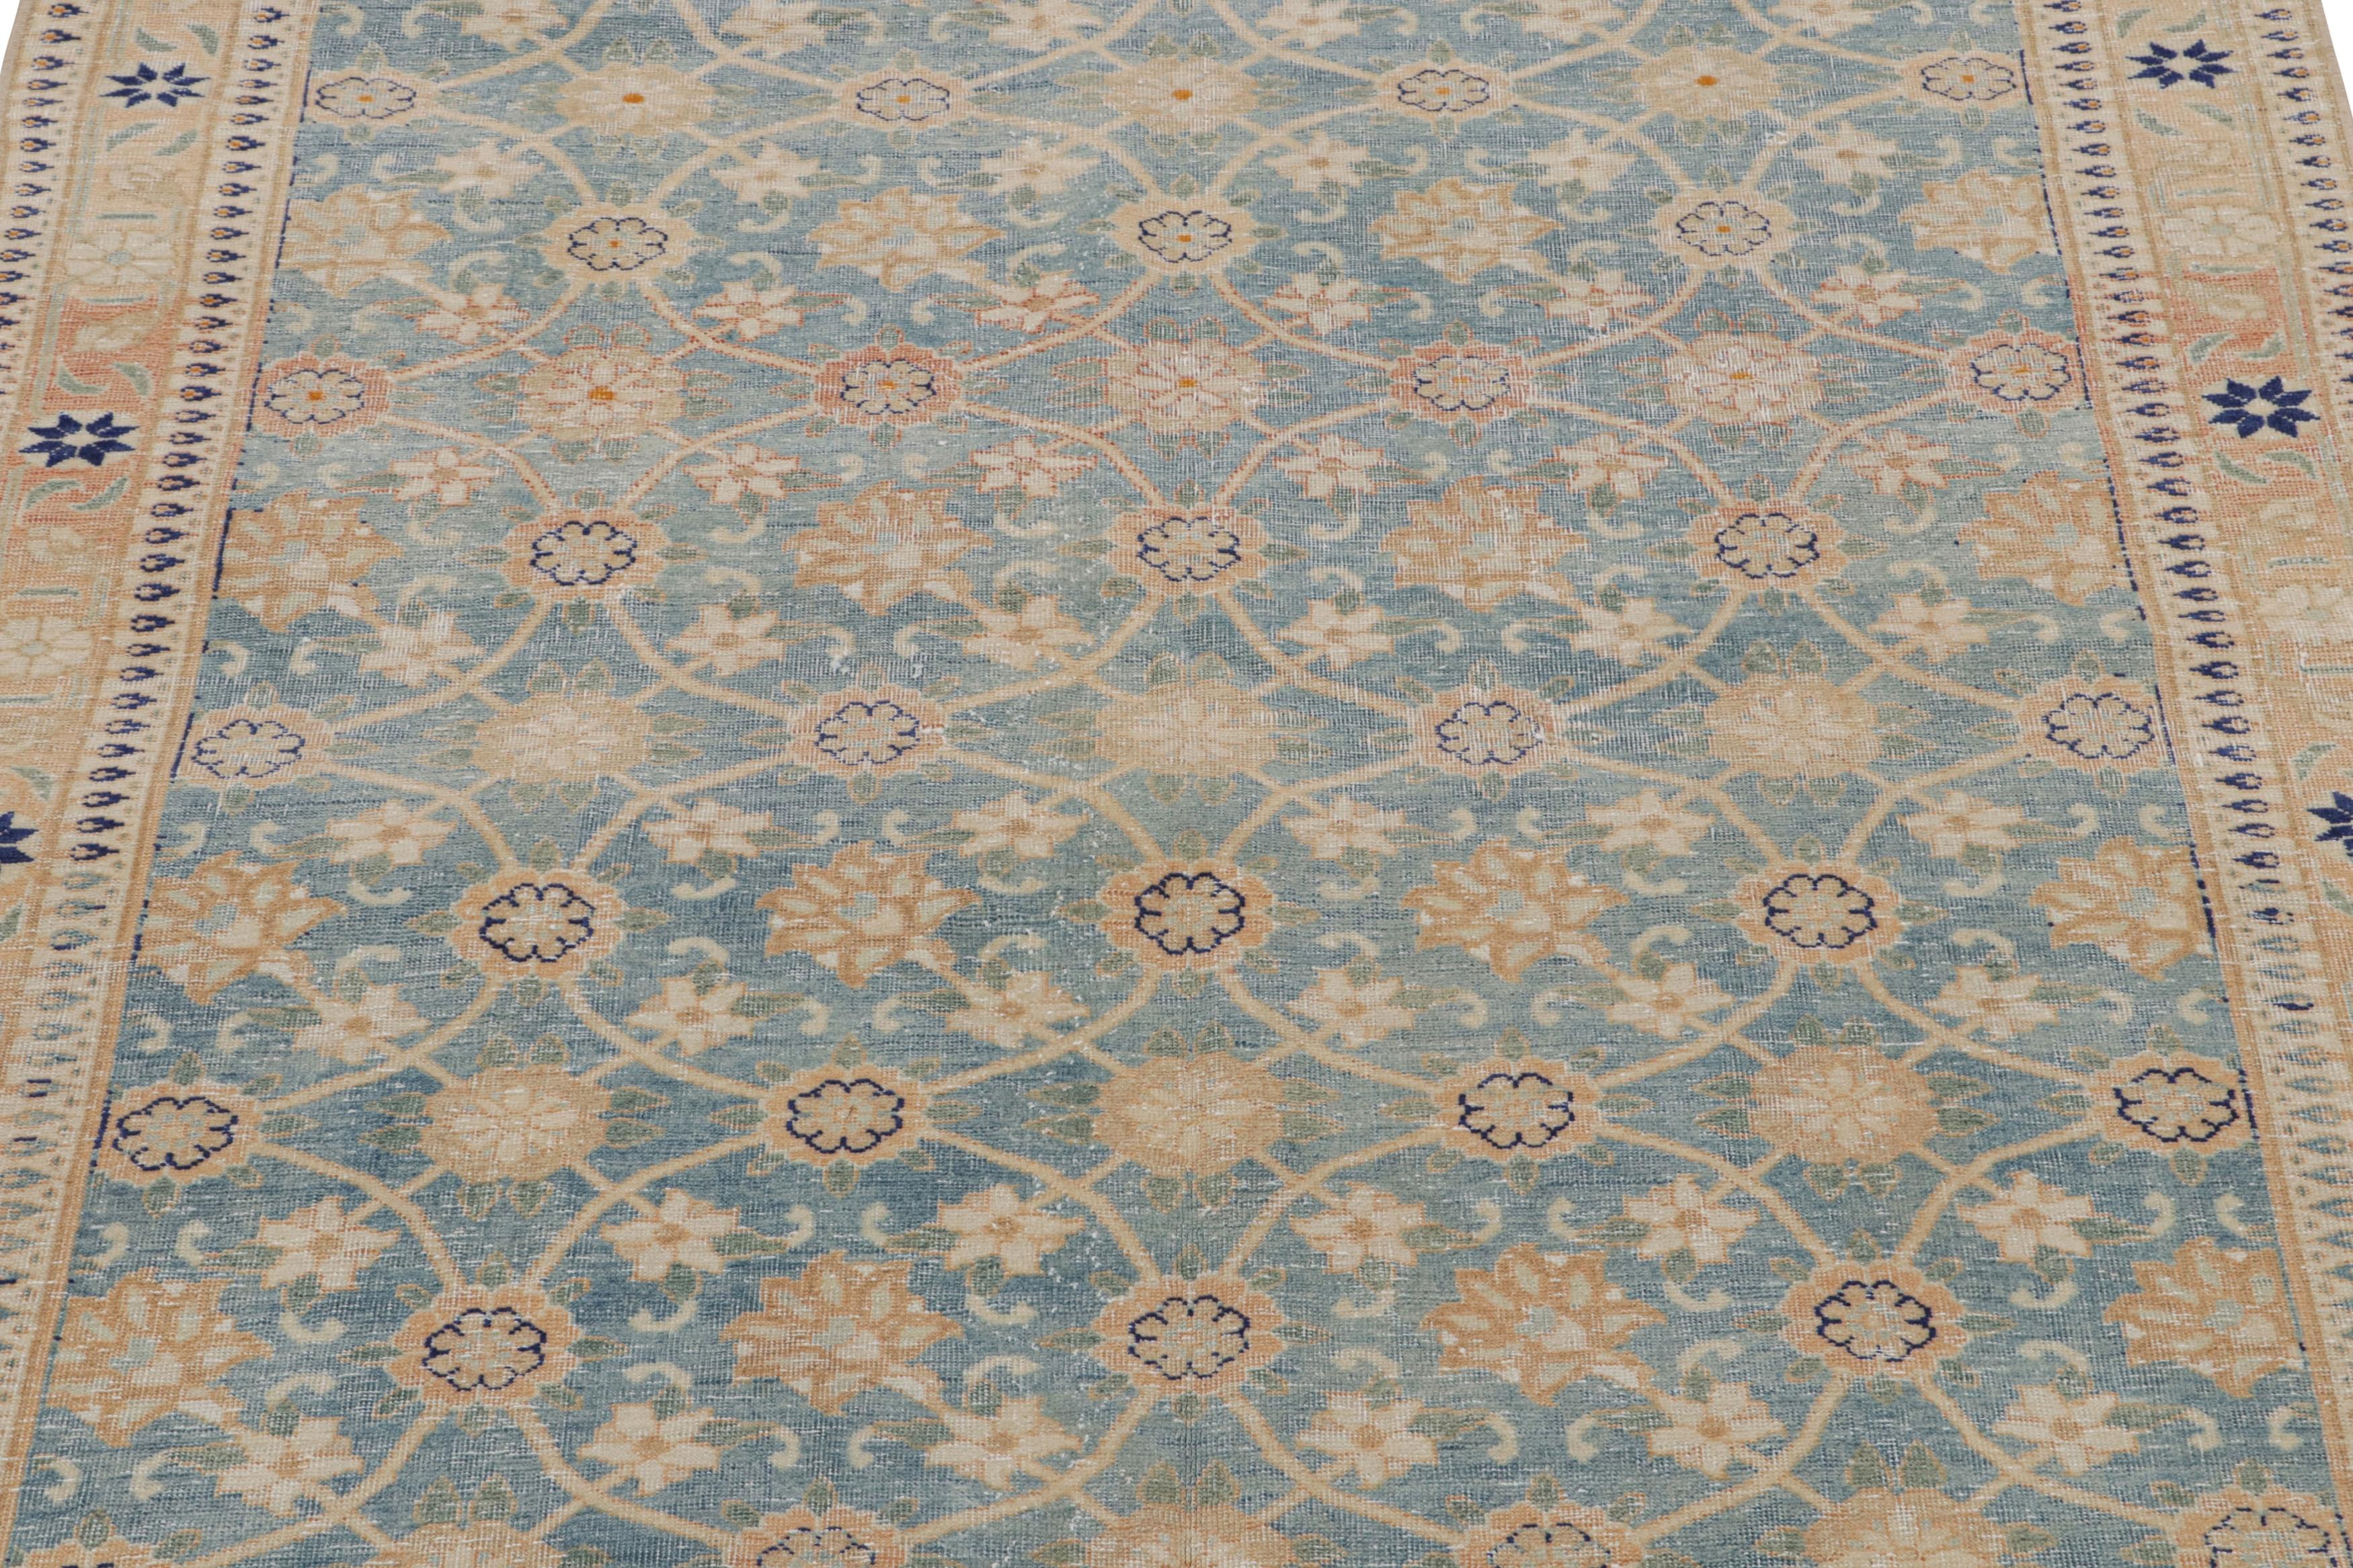 Dieser handgeknüpfte Wollteppich (ca. 1960-1970) im Format 3x5 ist von den persischen Varamin-Teppichen inspiriert - einer berühmten orientalischen Provenienz. 

Über das Design: 

Kenner können außerdem die schöne Annäherung an die Herati und Mina